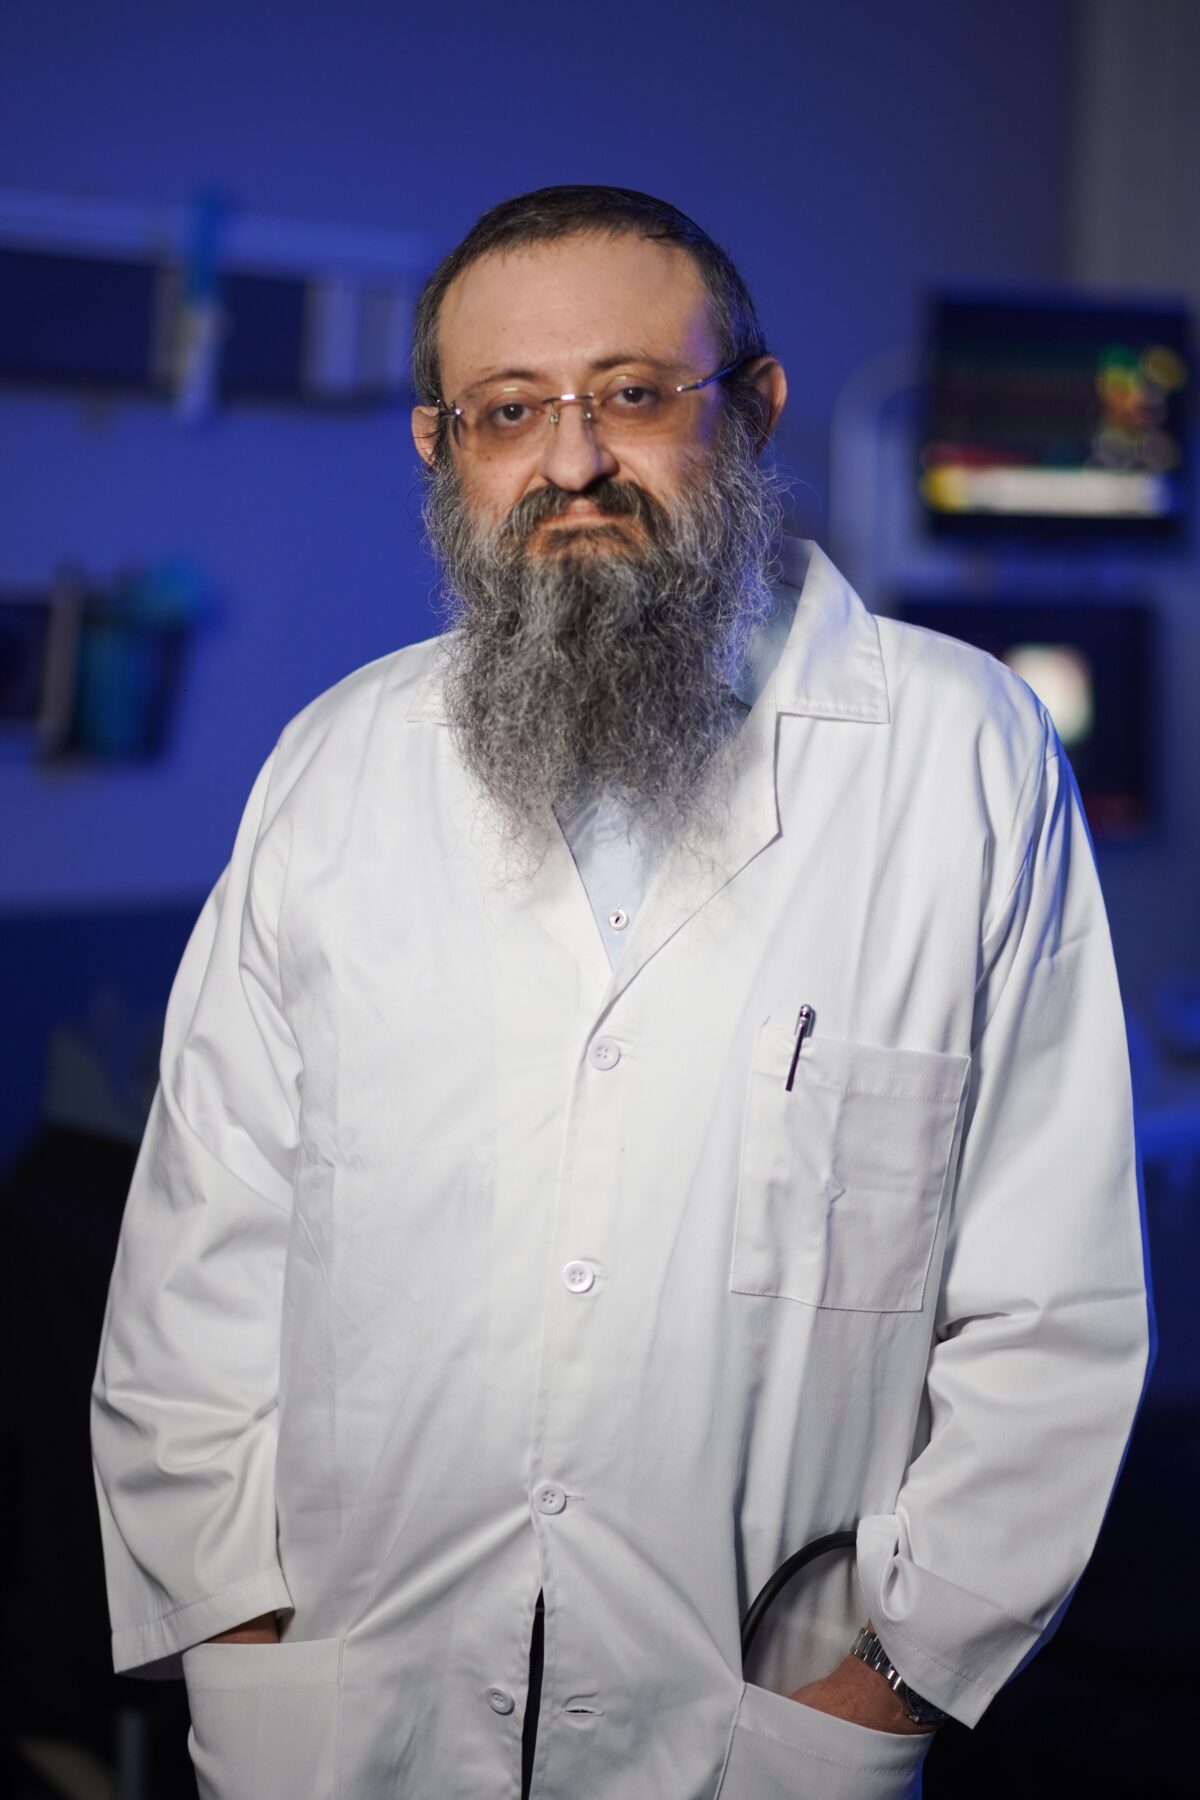 Dr. Vladimir Zelenko